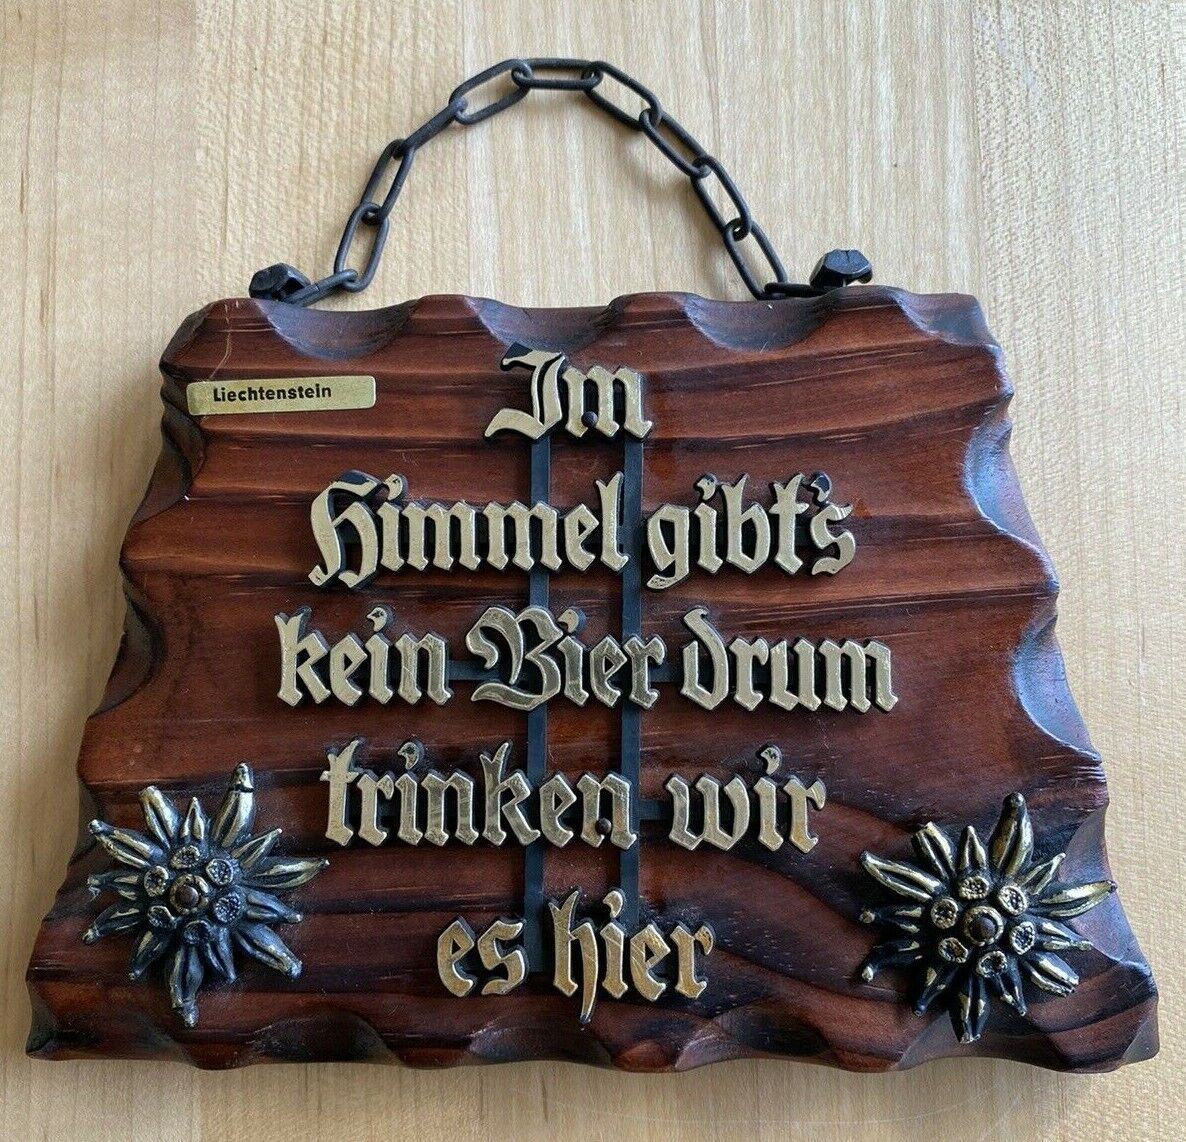 Vintage Wooden Pub Sign - Popular German Pub Song Lyrics - Liechtenstein